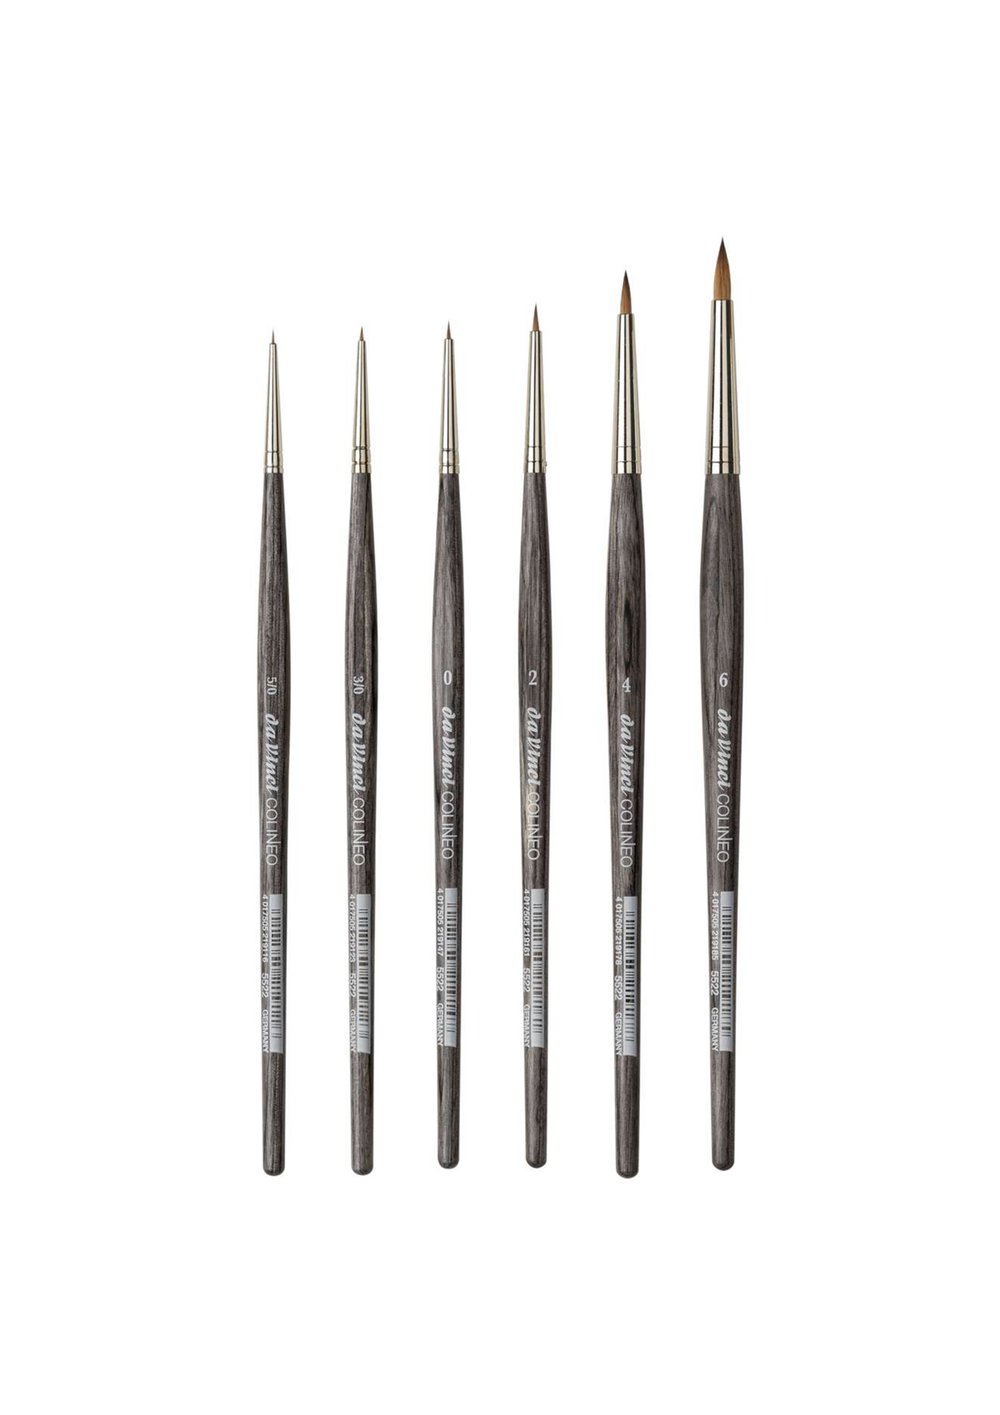 Da Vinci Colineo Series 5522 Synthetic Kolinsky Brush, Size 20 Round